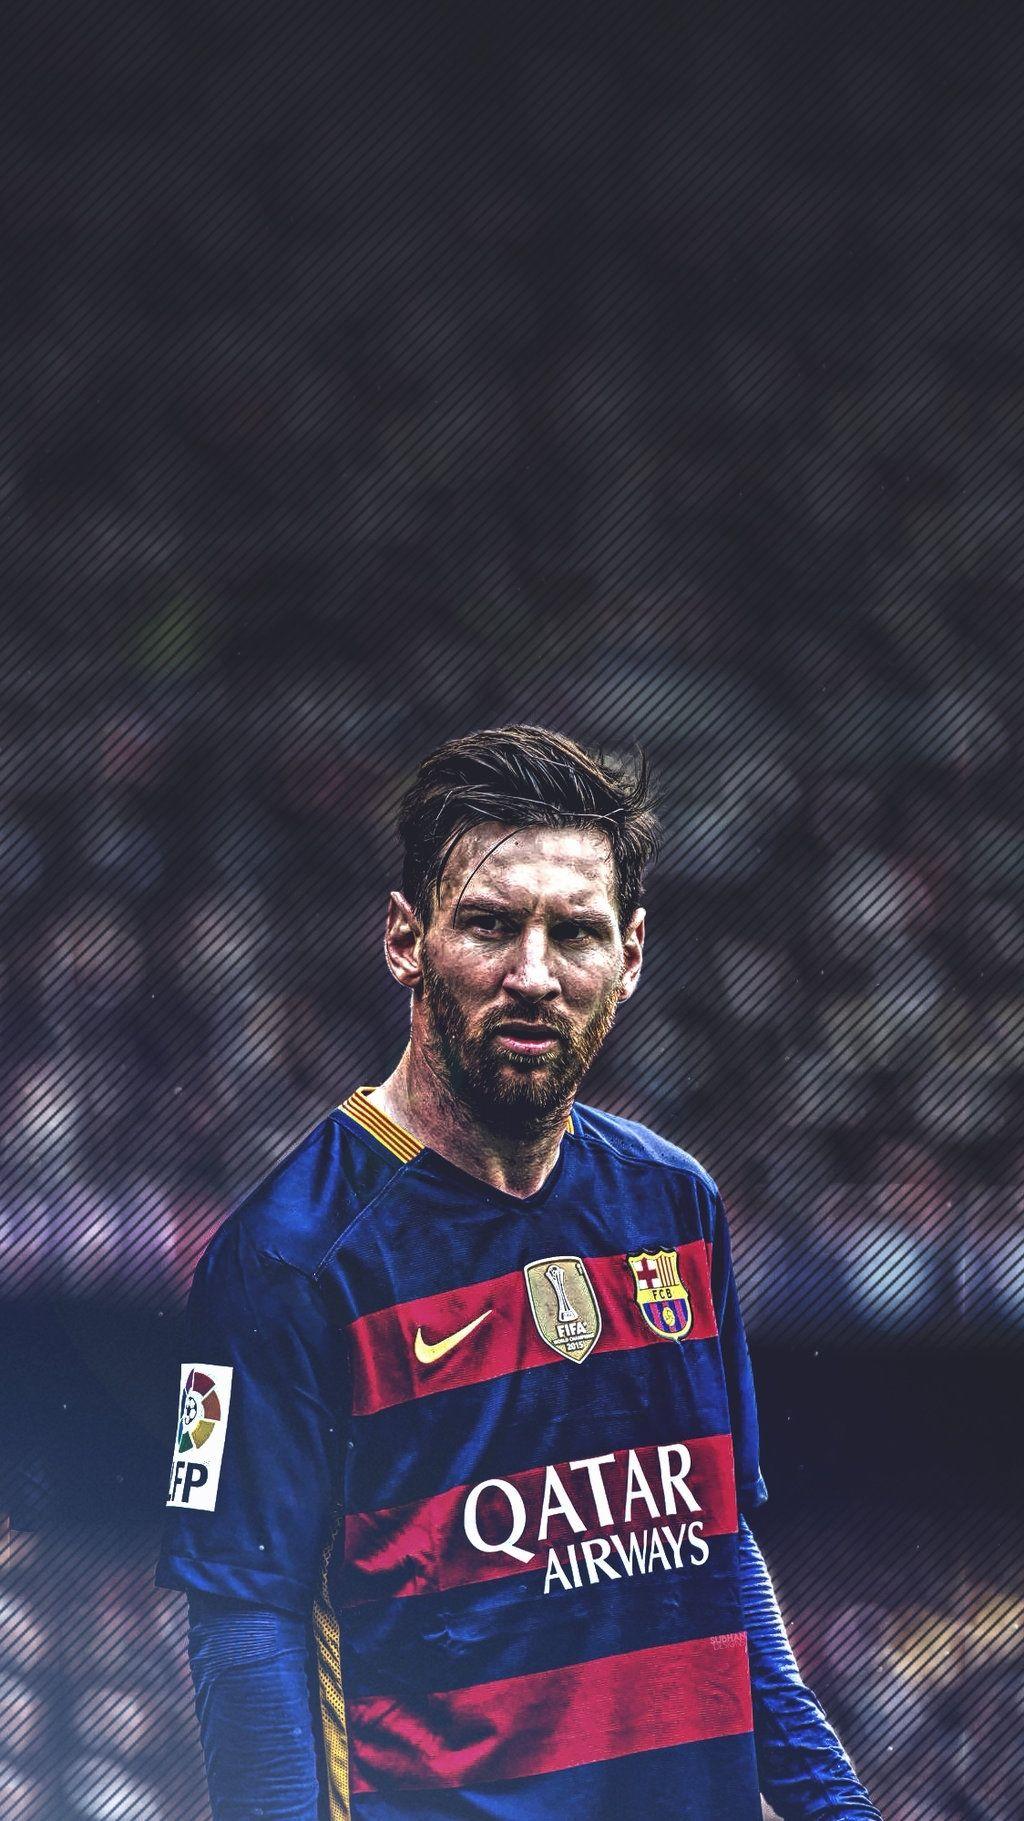 Đừng để chiếc điện thoại của bạn trở nên nhàm chán, hãy trang trí lại nó với bộ sưu tập 10 hình nền của Messi đẹp như tranh vẽ. Cảm nhận sự nổi bật và quyền uy của siêu sao bóng đá này trên màn hình điện thoại của bạn.